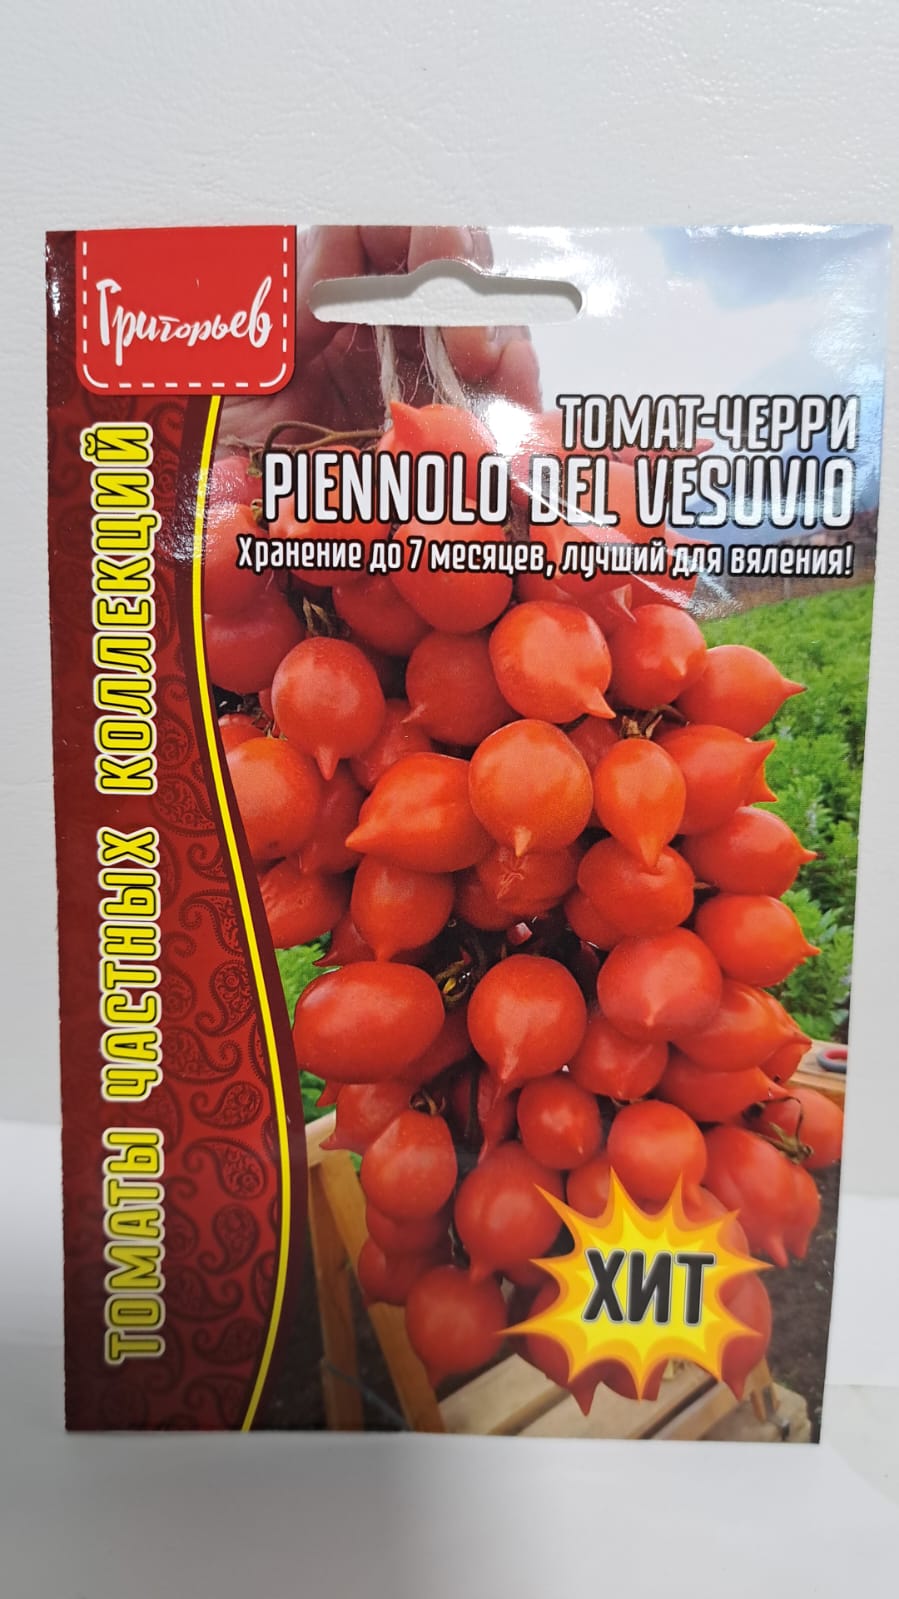 Семена томат Piennolo del vesuvio Редкие семена TLTRST2106 2 уп.